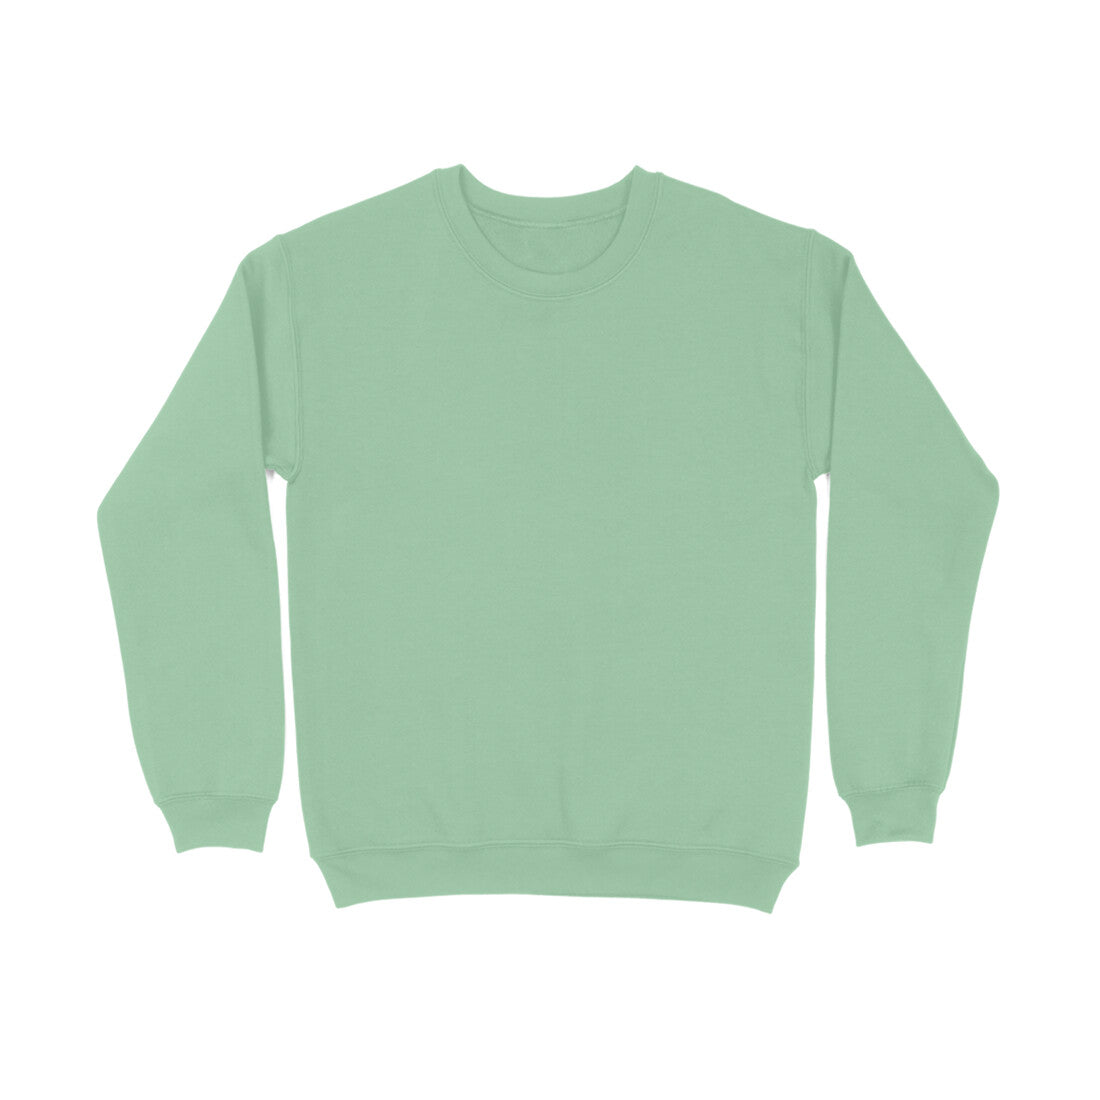 Men's Mint Green Sweatshirt